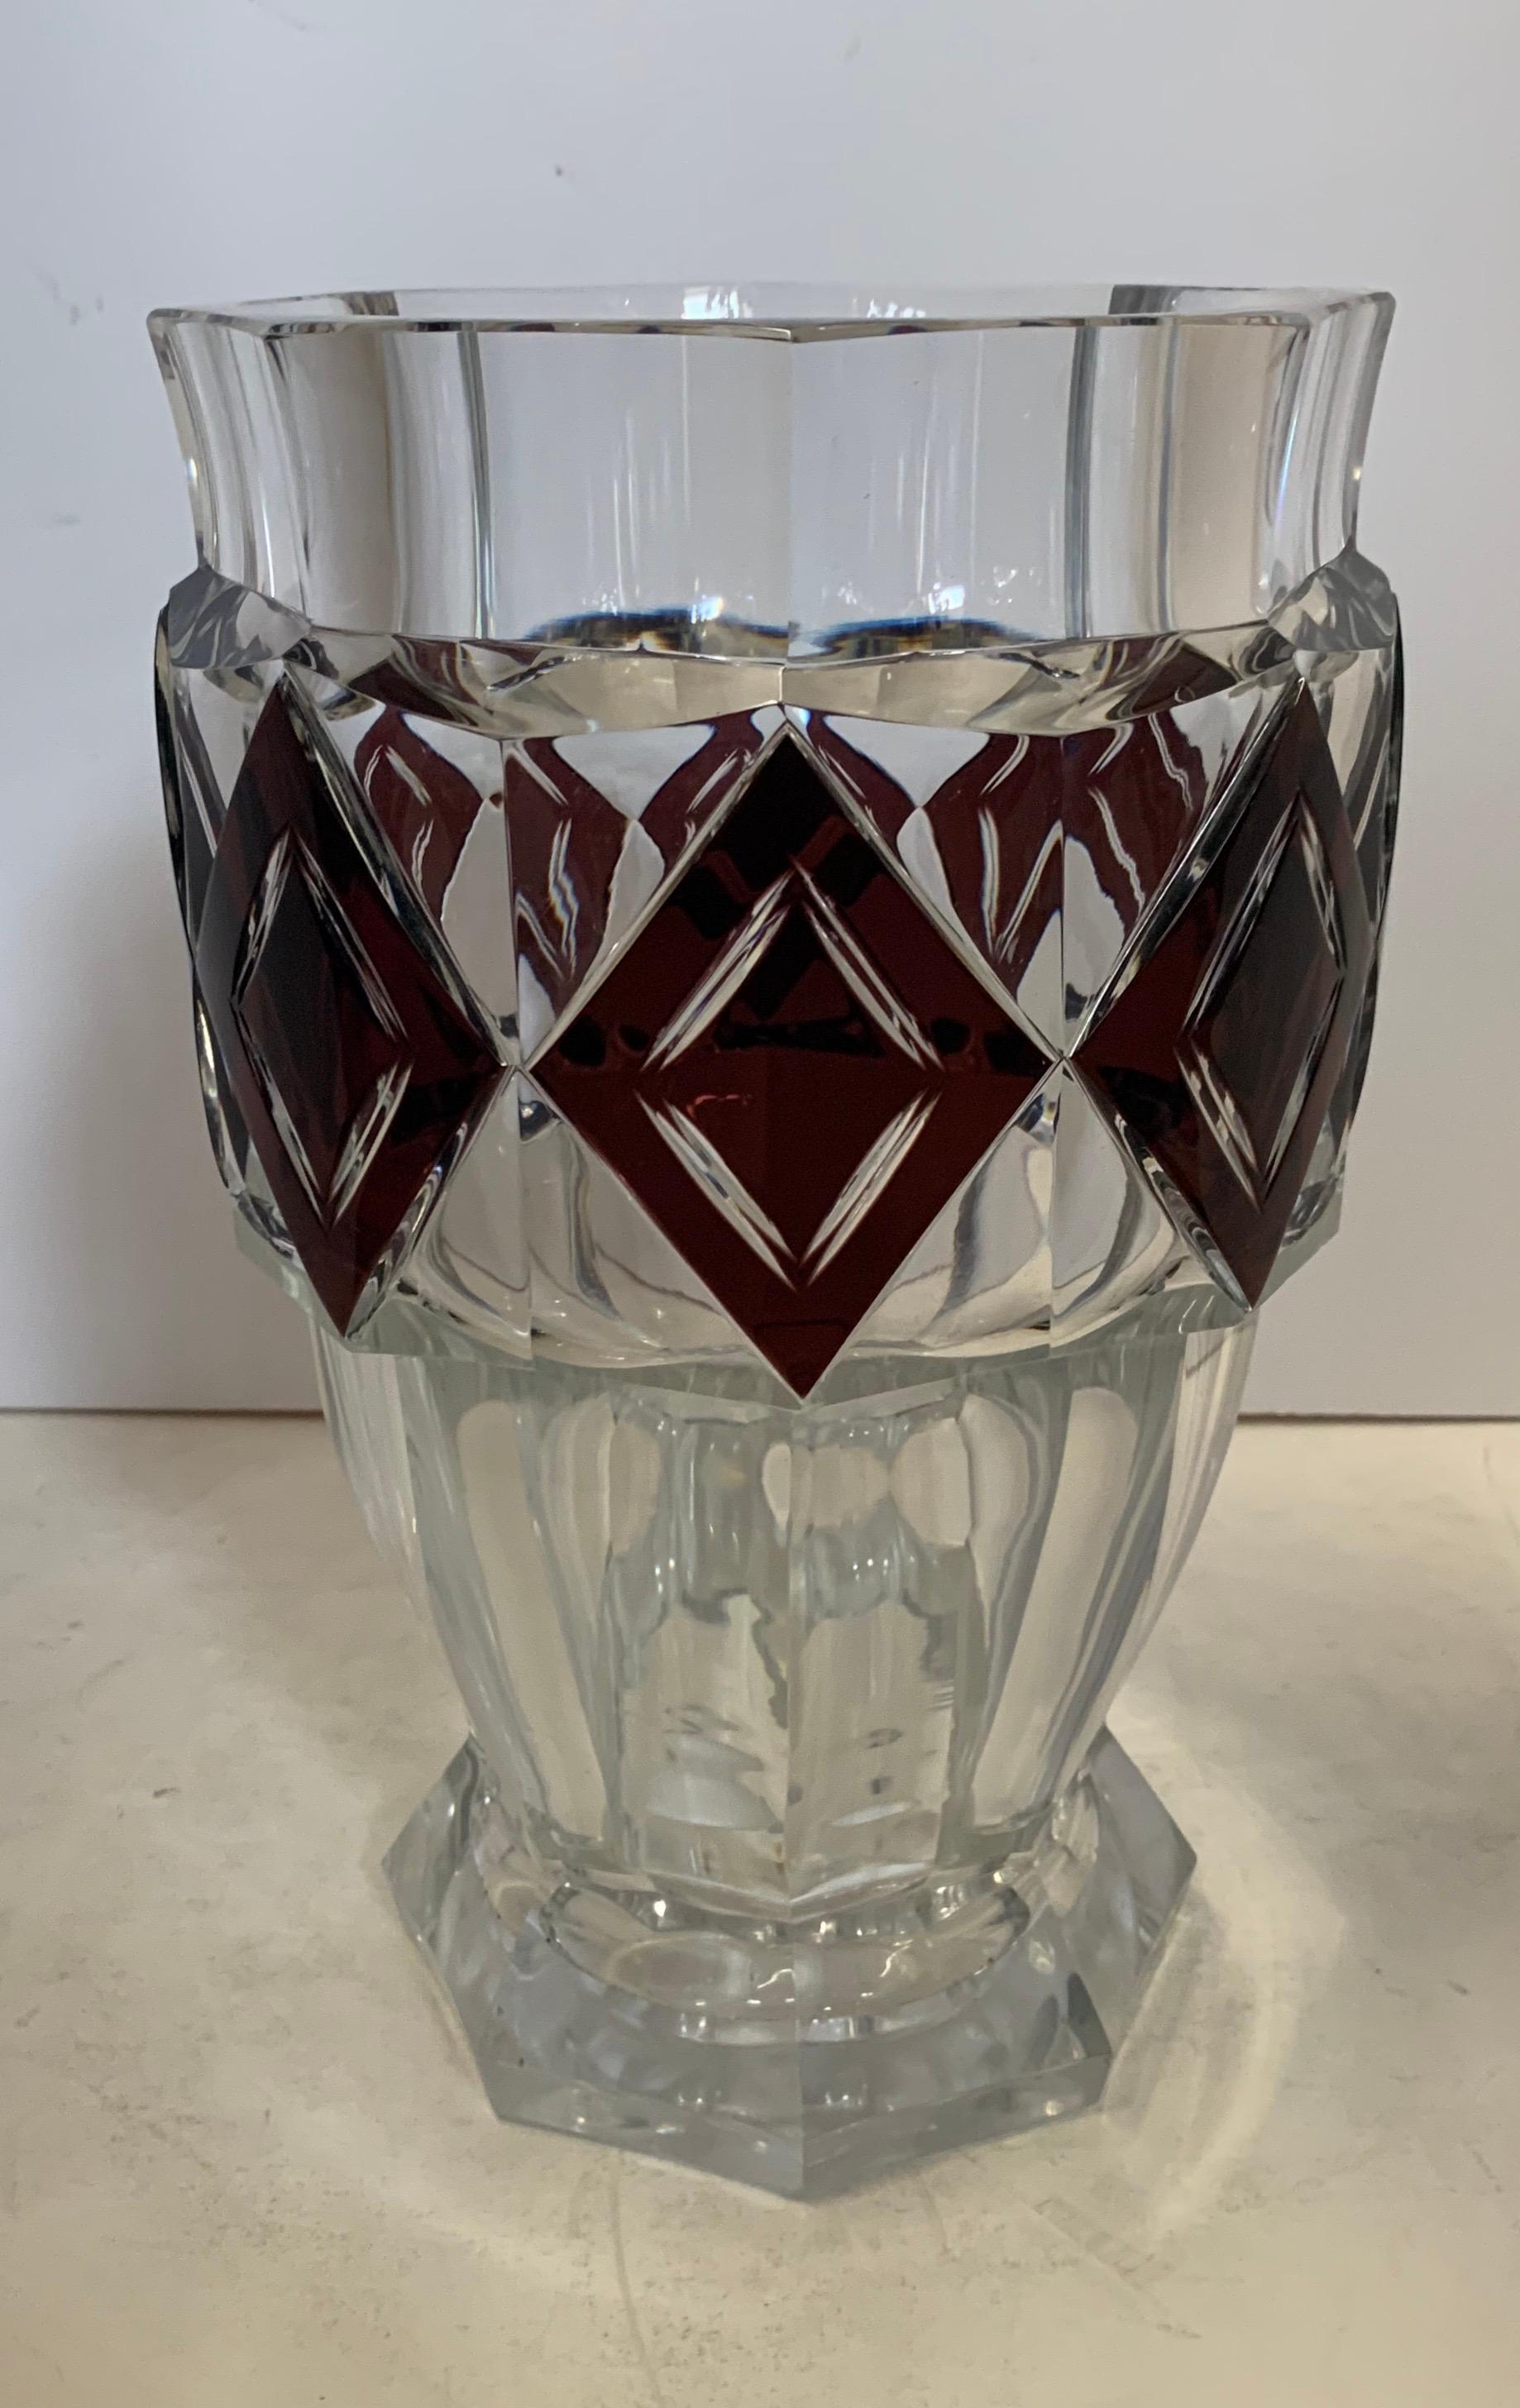 Un merveilleux Val Saint Lambert améthyste diamant superposé verre d'art / cristal Kipling grand vase non signé.
Mesures : 11 1/2